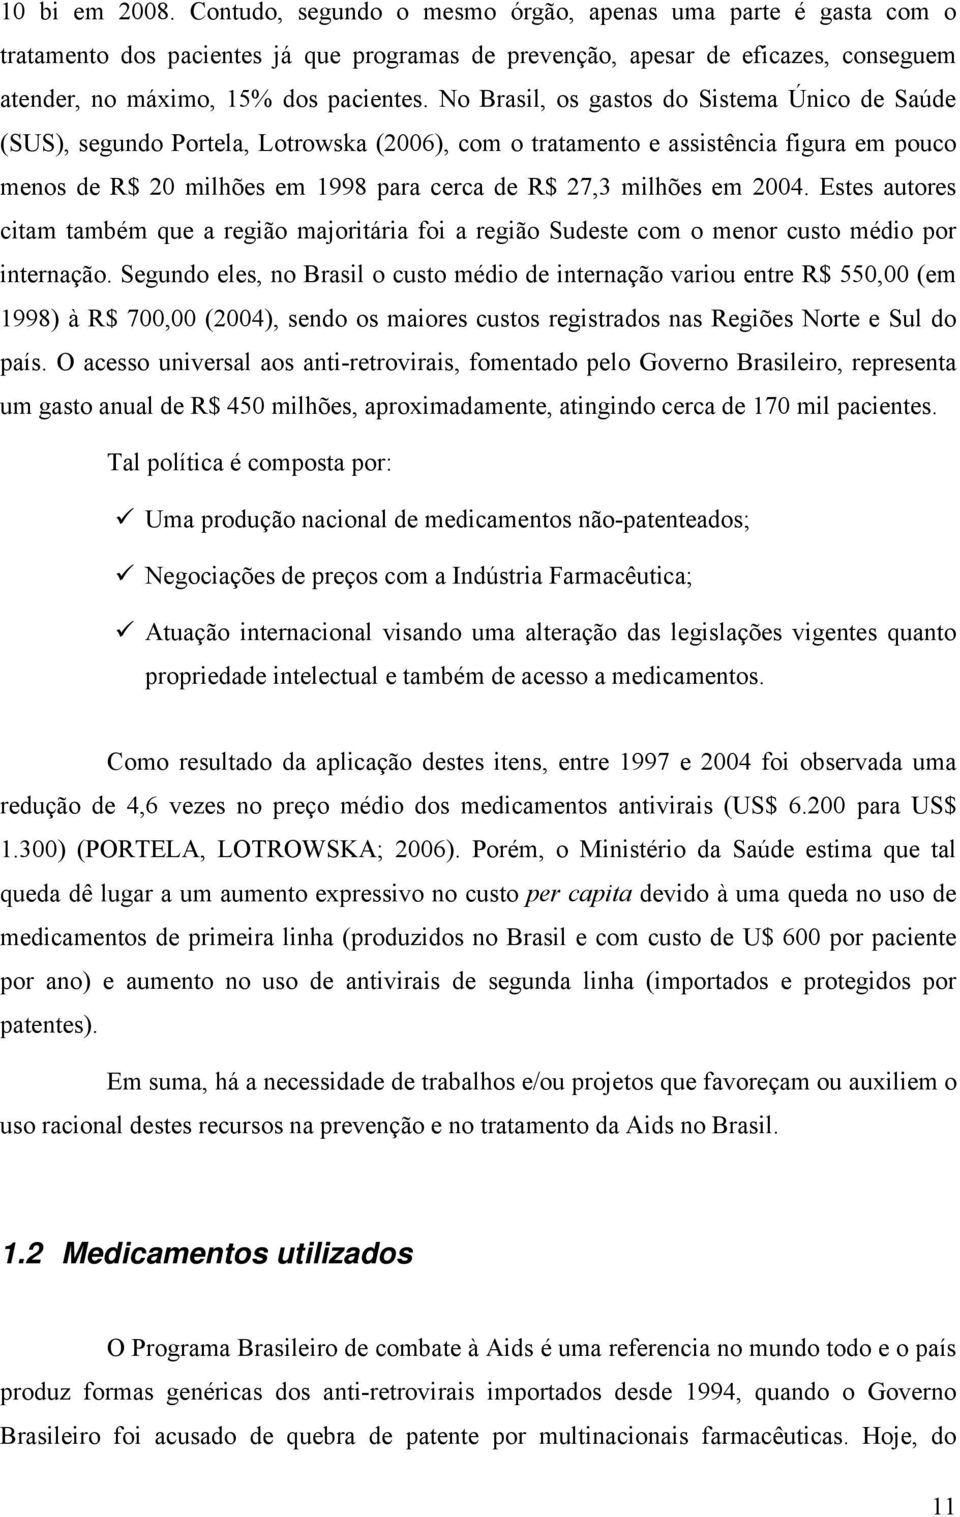 No Brasil, os gastos do Sistema Único de Saúde (SUS), segundo Portela, Lotrowska (2006), com o tratamento e assistência figura em pouco menos de R$ 20 milhões em 1998 para cerca de R$ 27,3 milhões em